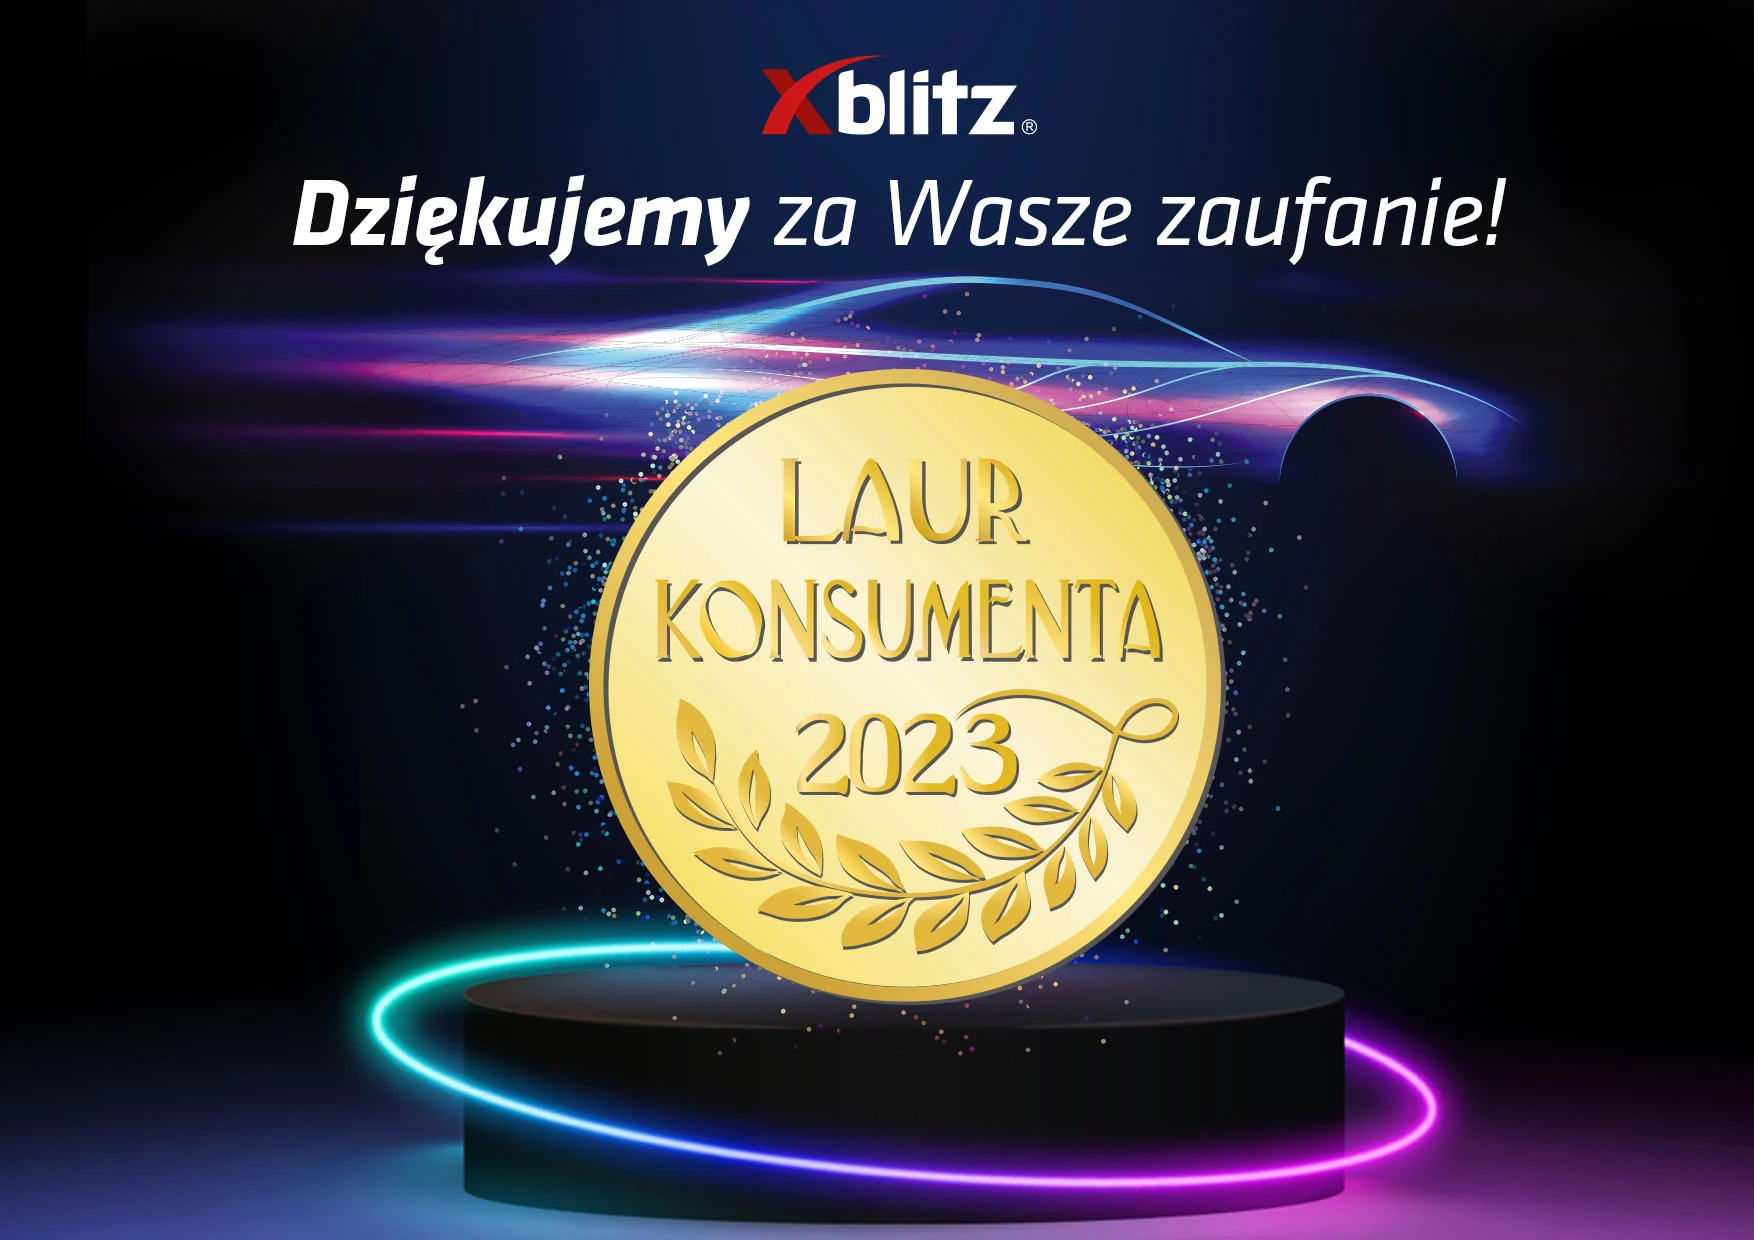 Złoty Laur Konsumenta 2023 dla Xblitz!